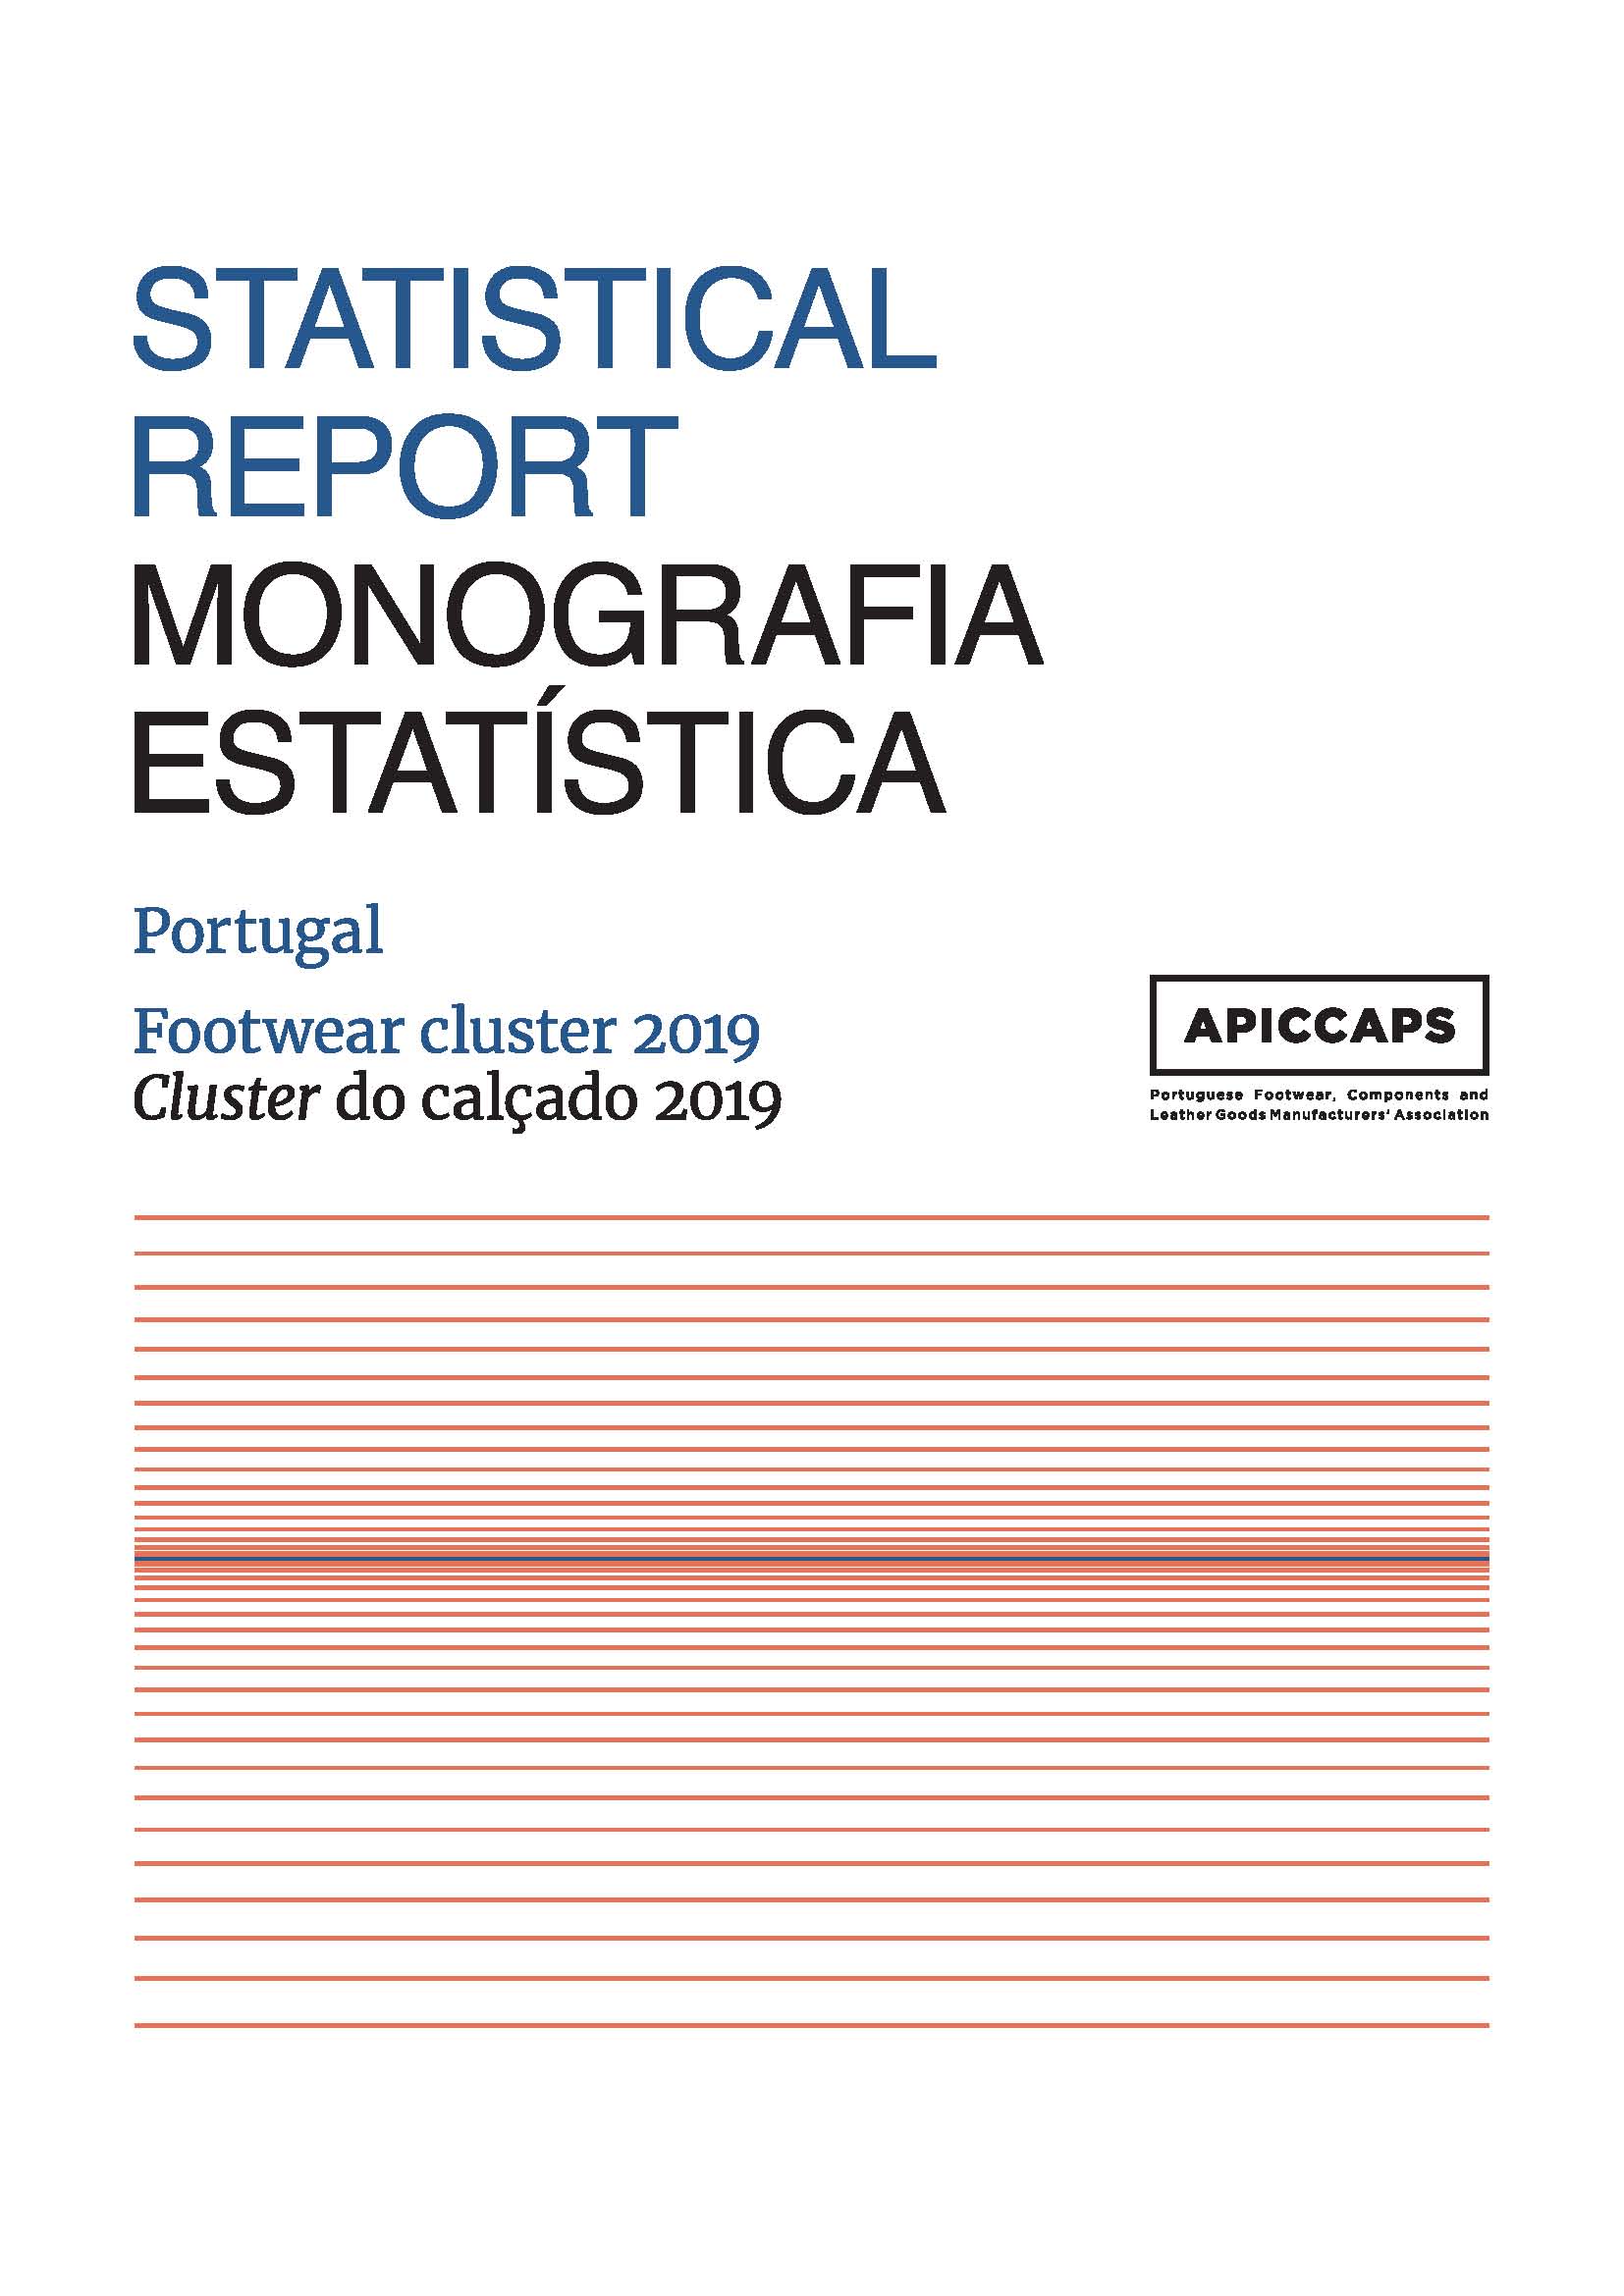 Monografia Estatística Publicações Monografia Estatística 2019